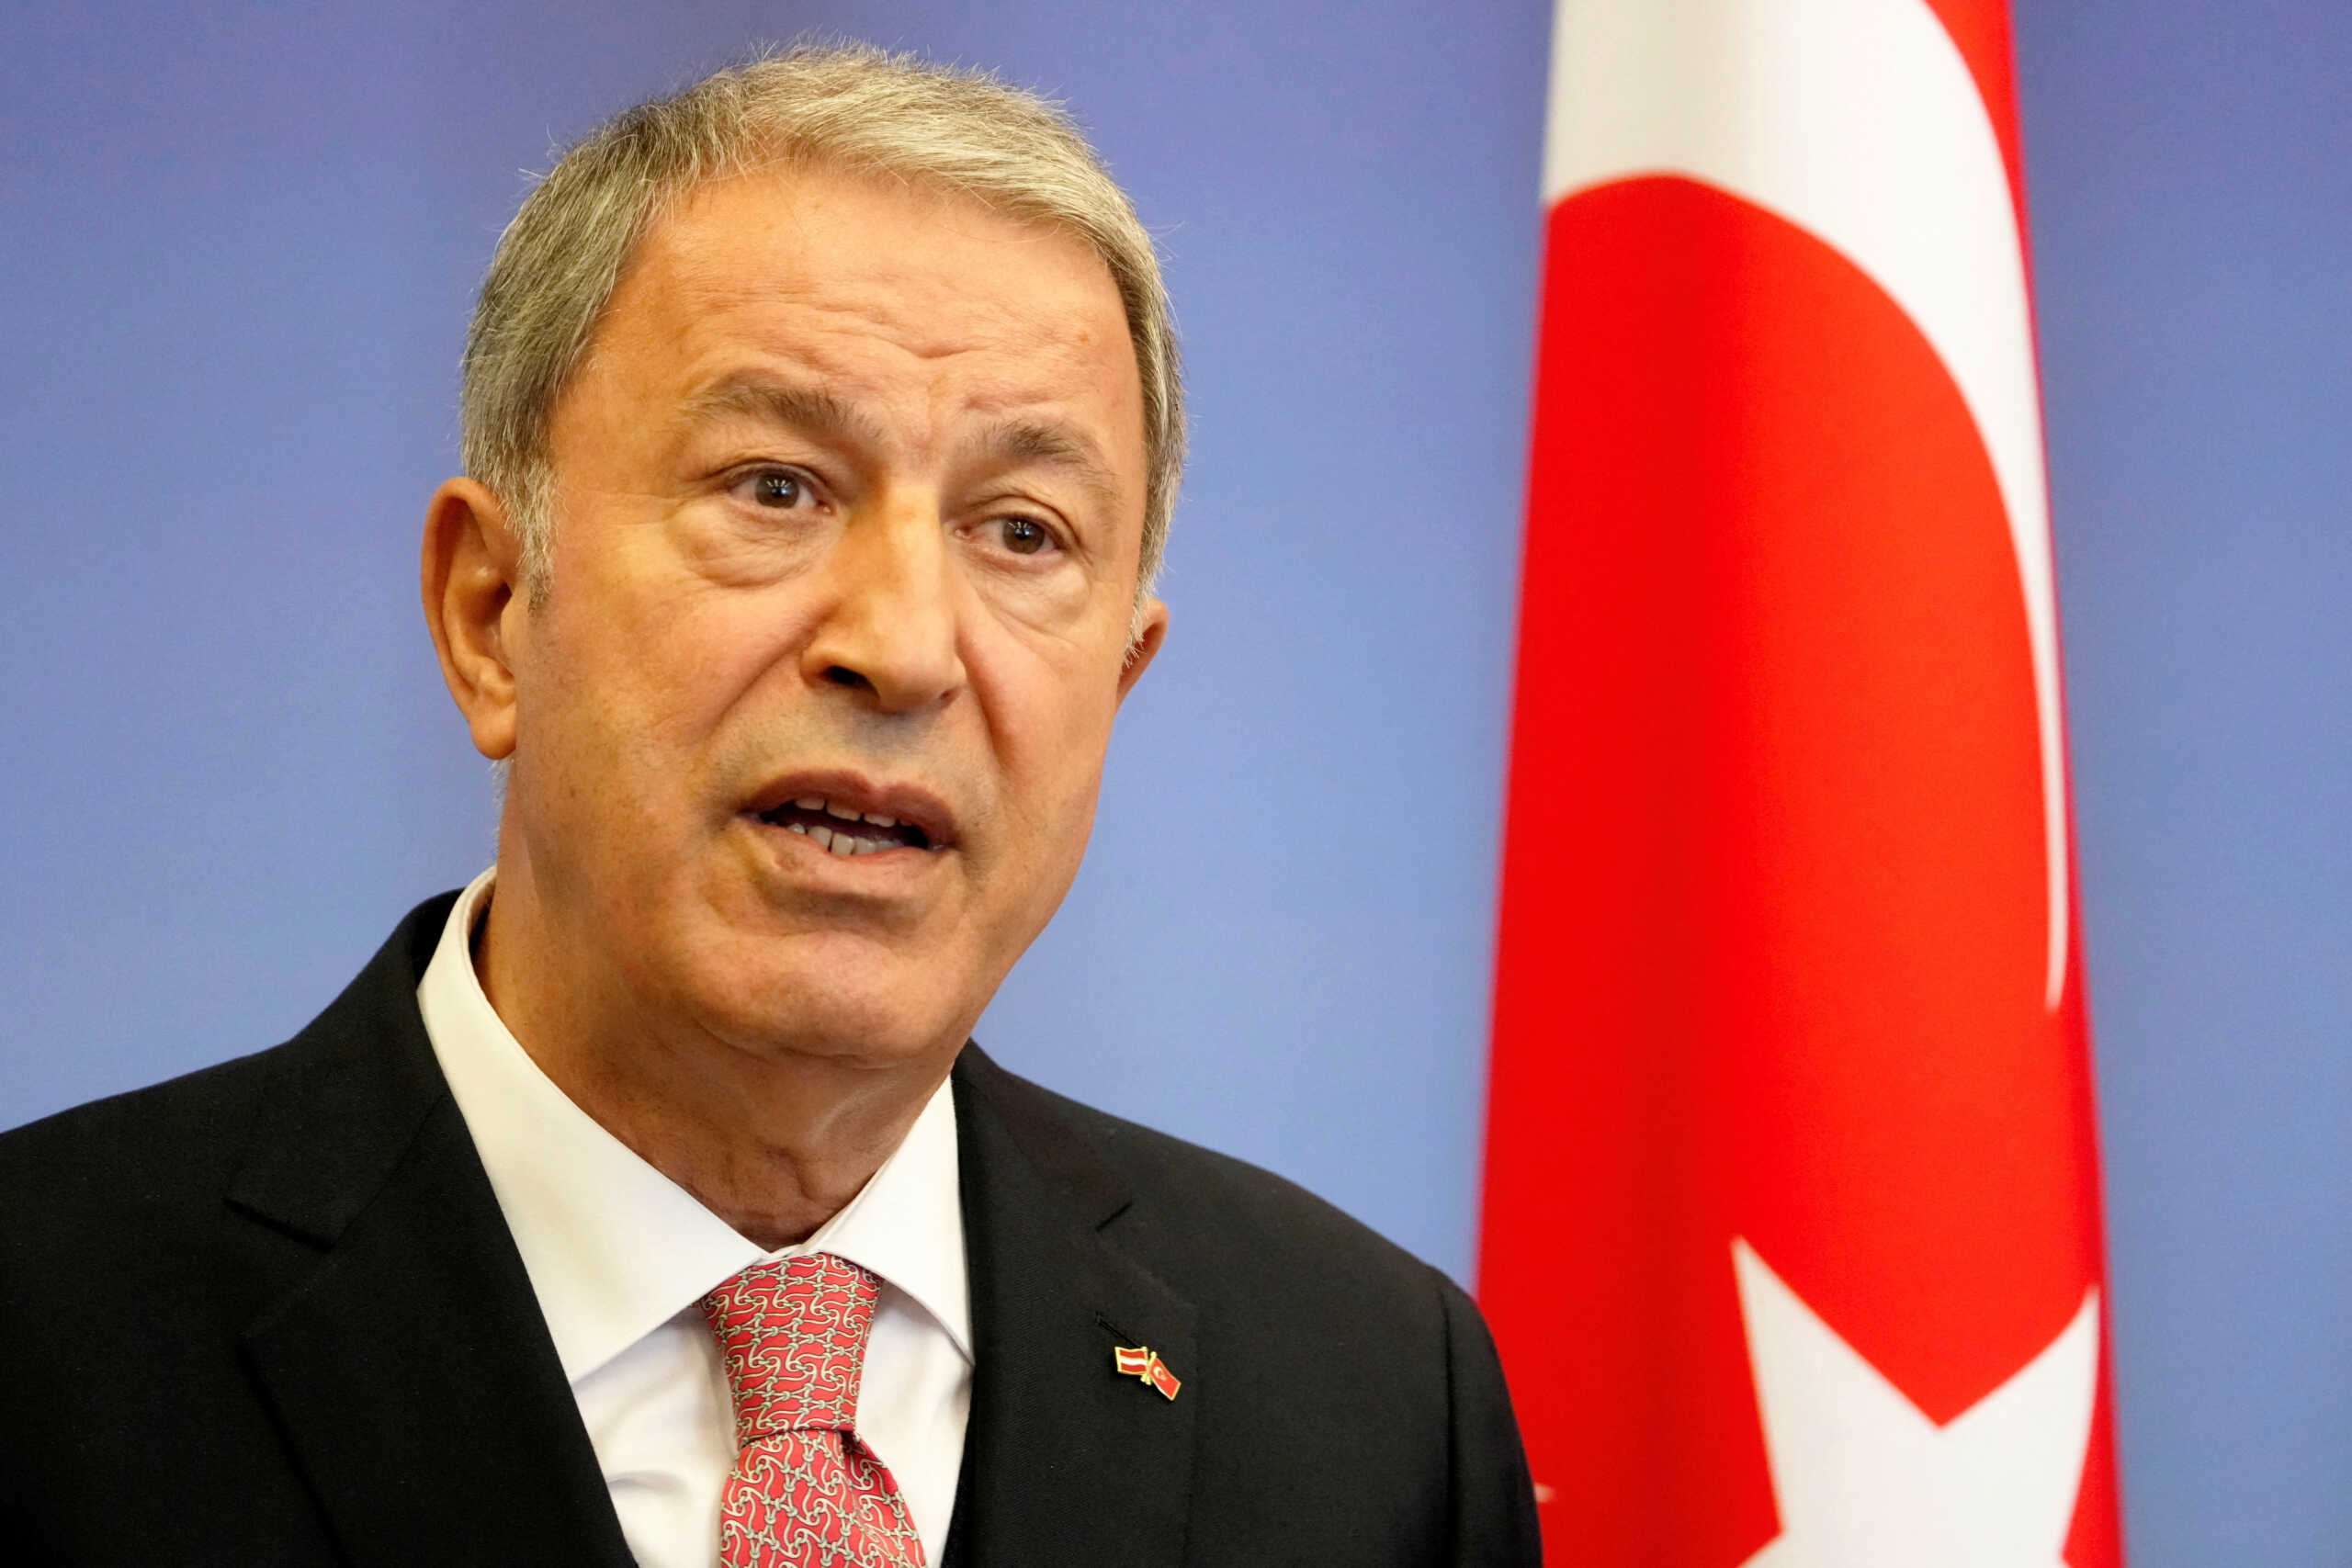 Νέες προκλήσεις Ακάρ: Η Τουρκία έχει δικαίωμα αυτοάμυνας στο Αιγαίο